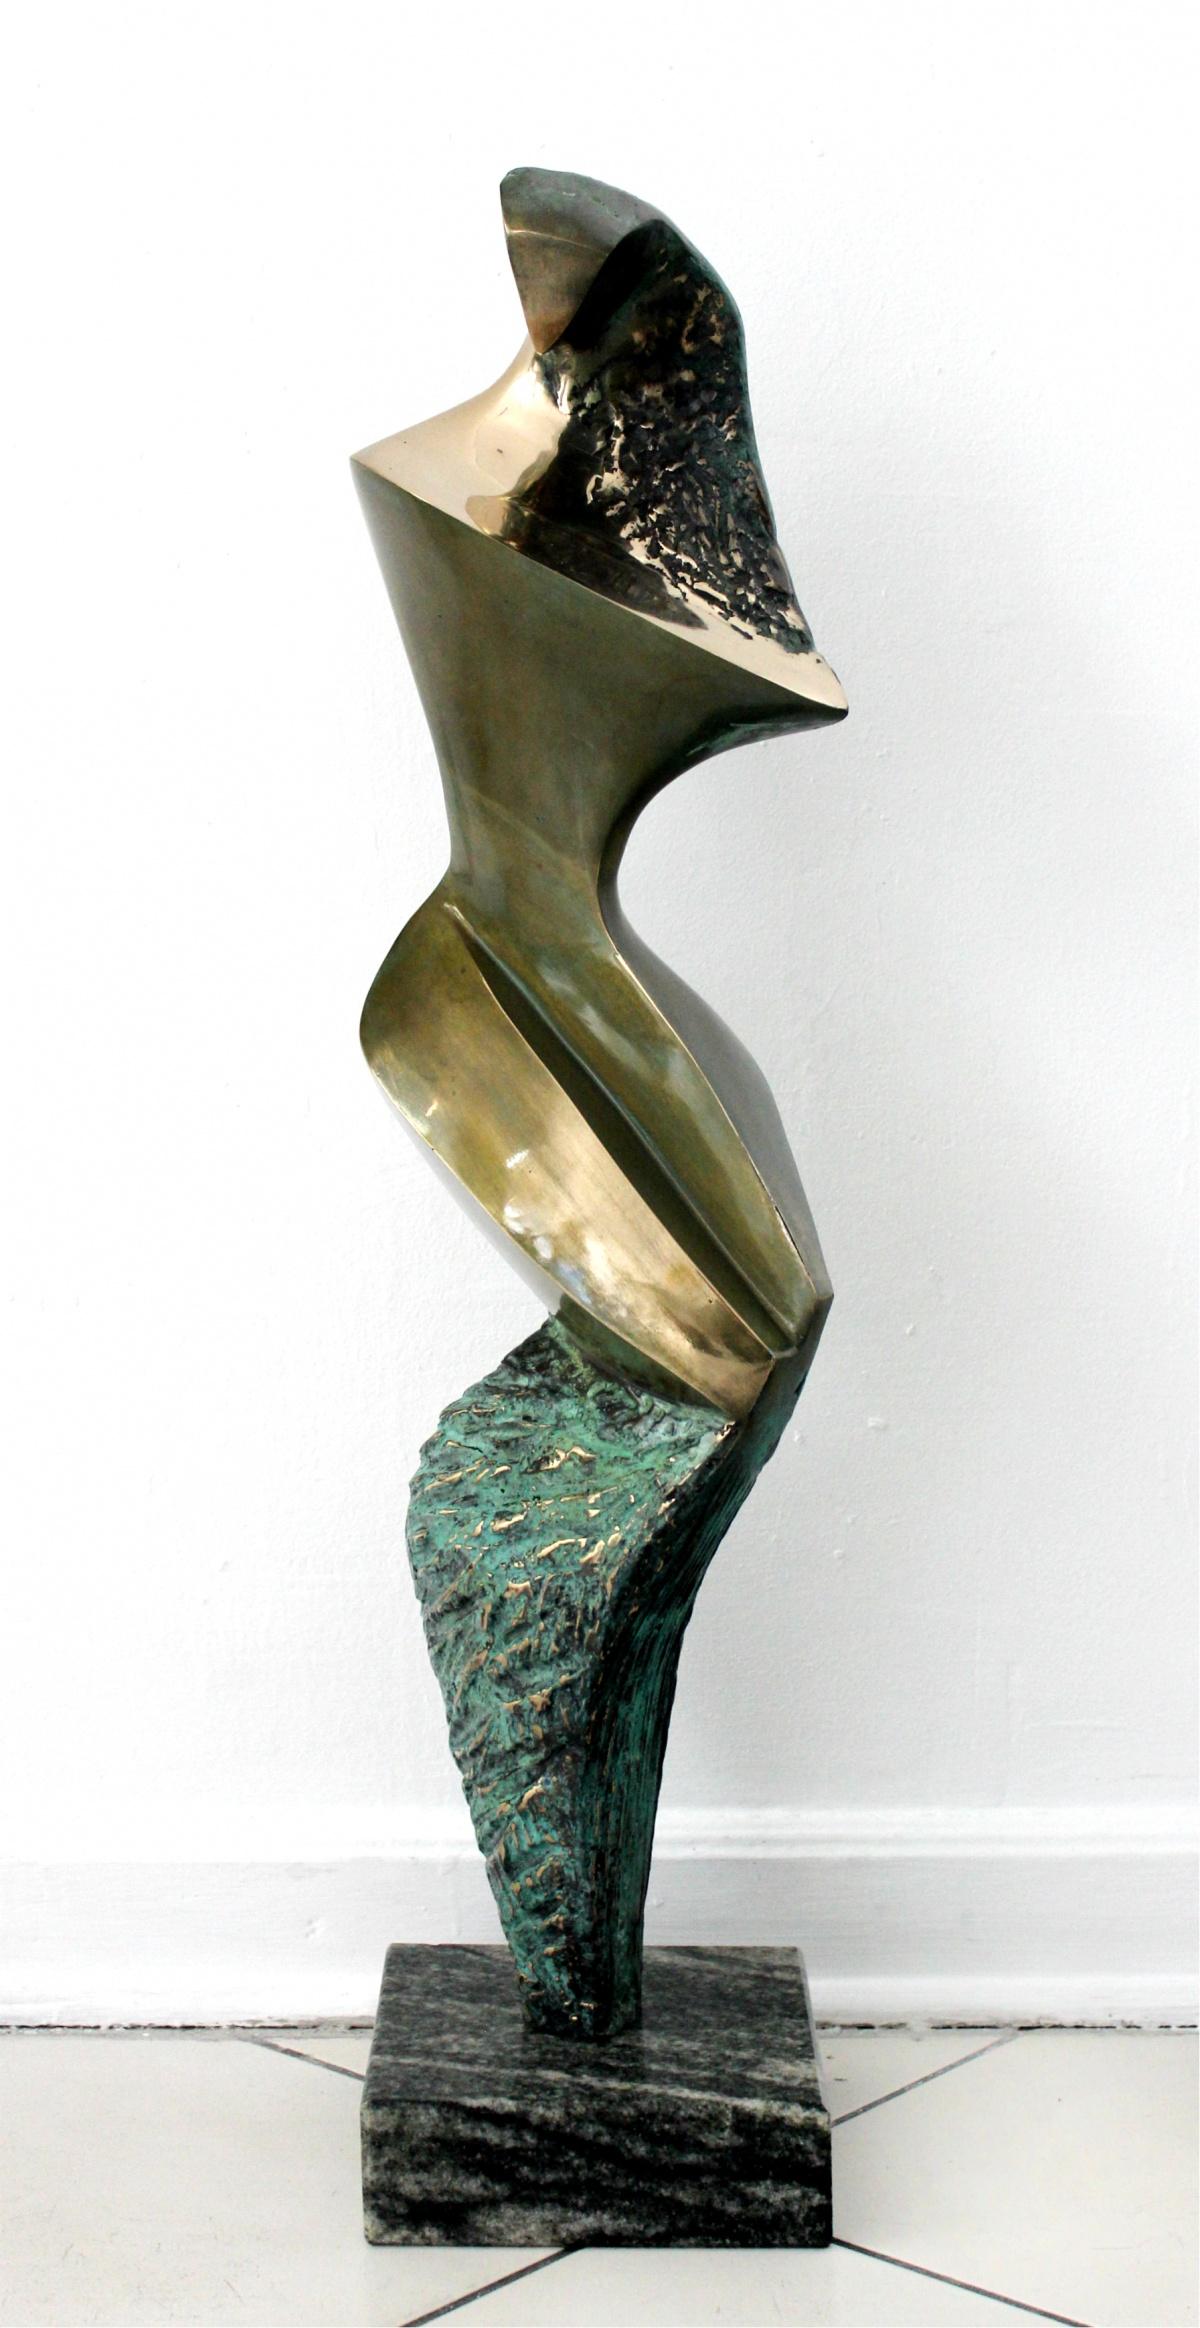 Stanisław Wysocki Nude Sculpture - Inspiration III - Contemporary Bronze Sculpture, Abstract, Figurative, Nude